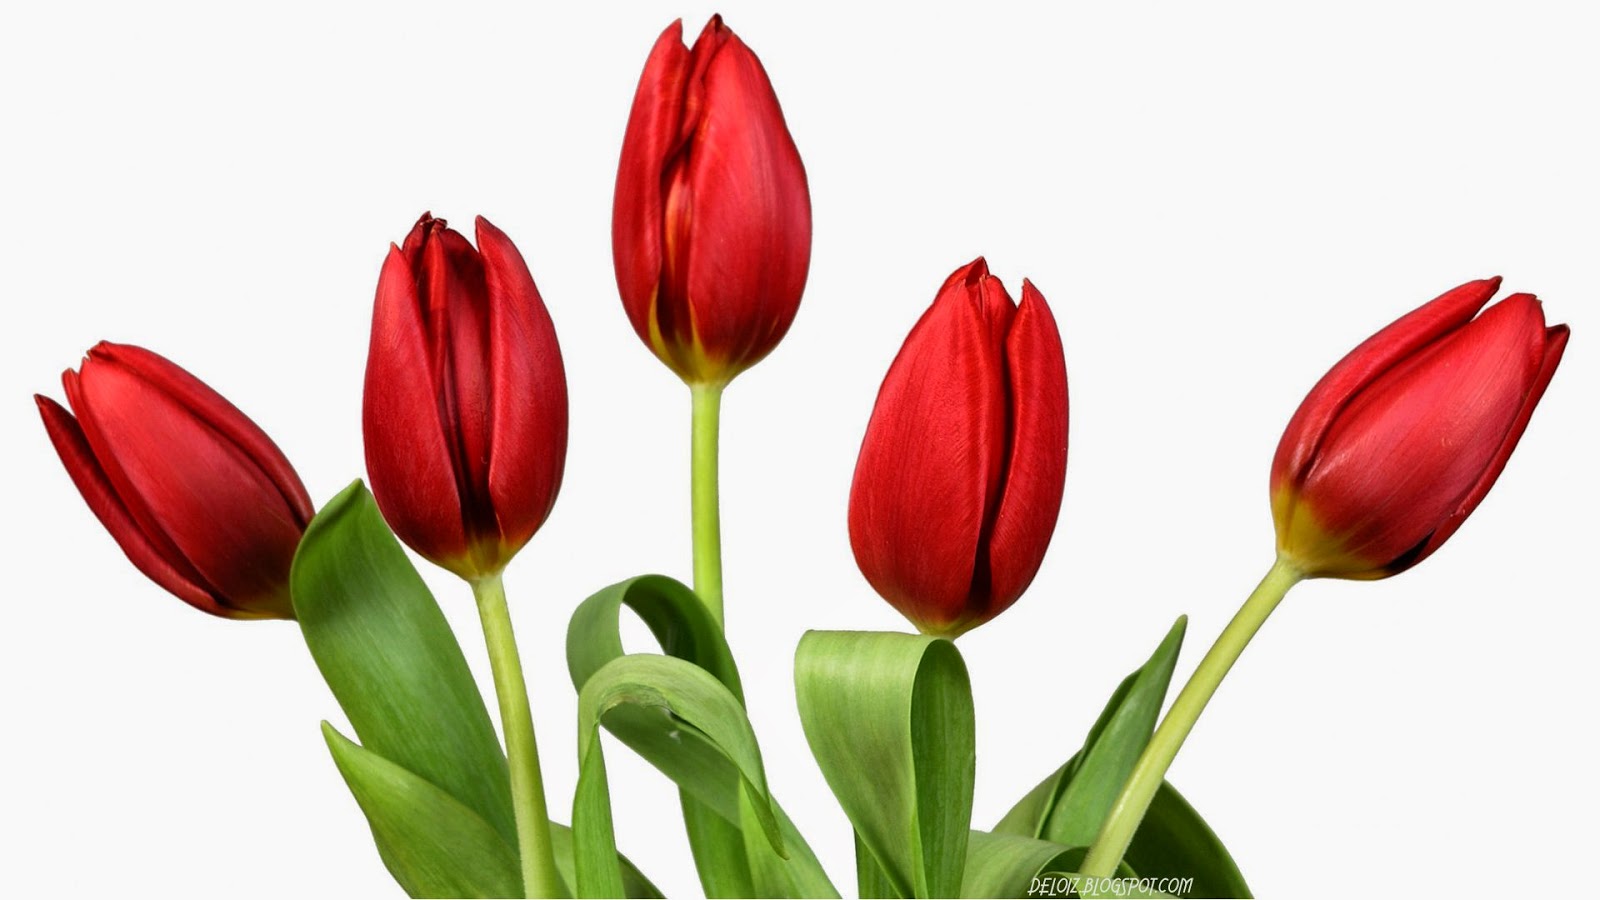 Wallpaper Bunga Tulip Merah | Deloiz Wallpaper